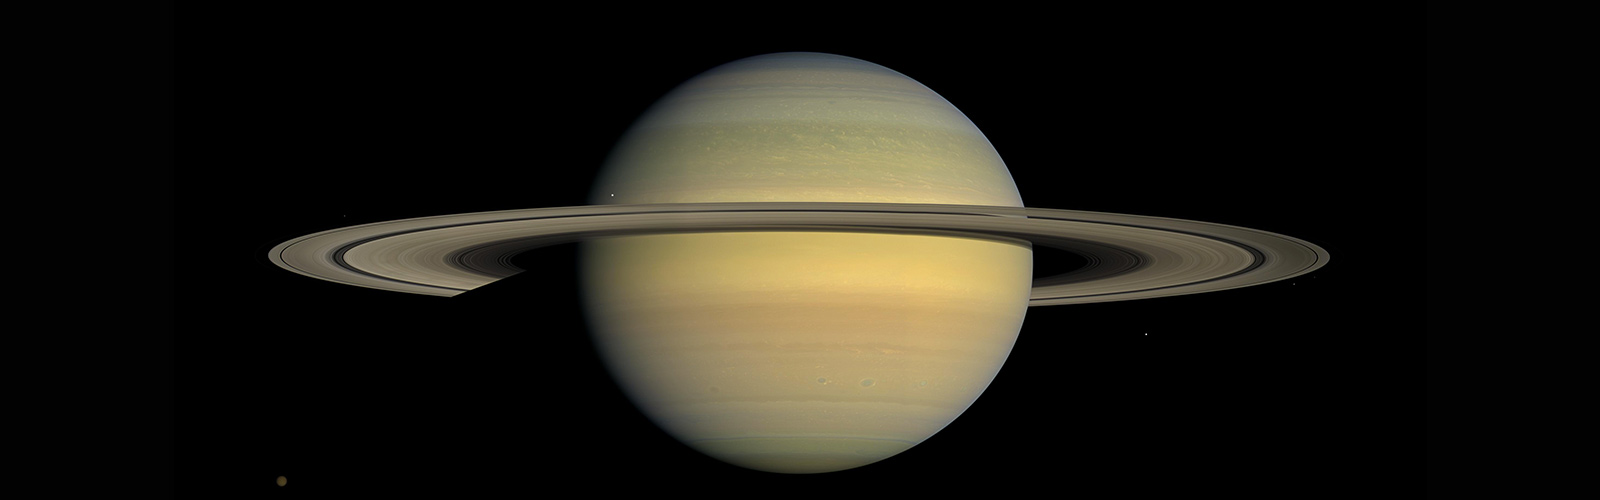 Планета сатурн картинки